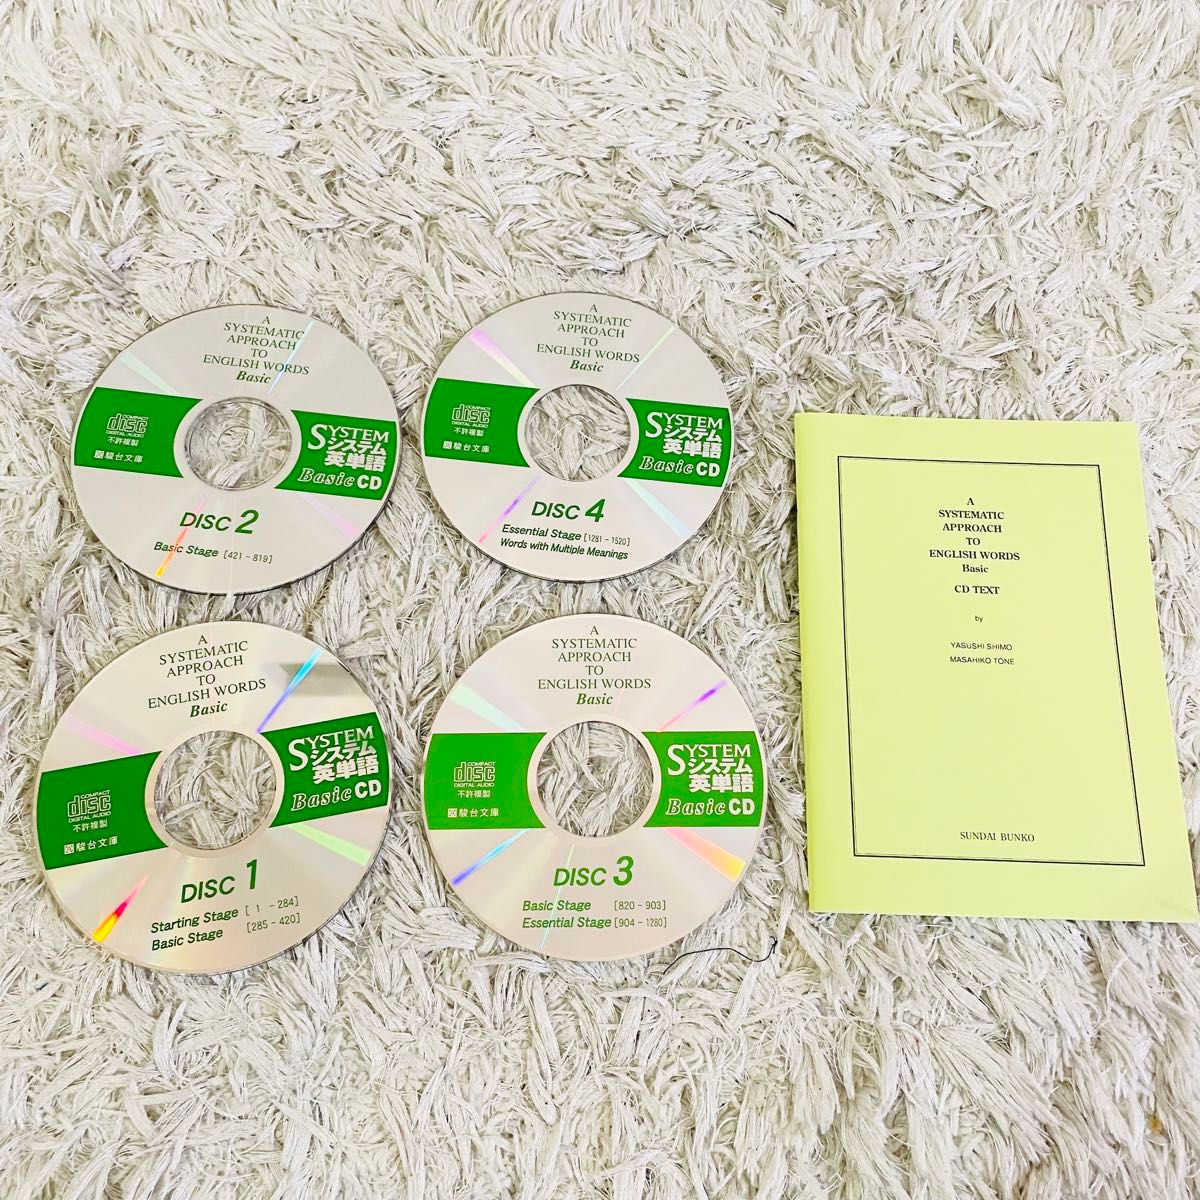 リスニングCD NEW HORIZON システム英単語BasicCD (4枚組) CD TOTAL ENGLISH 